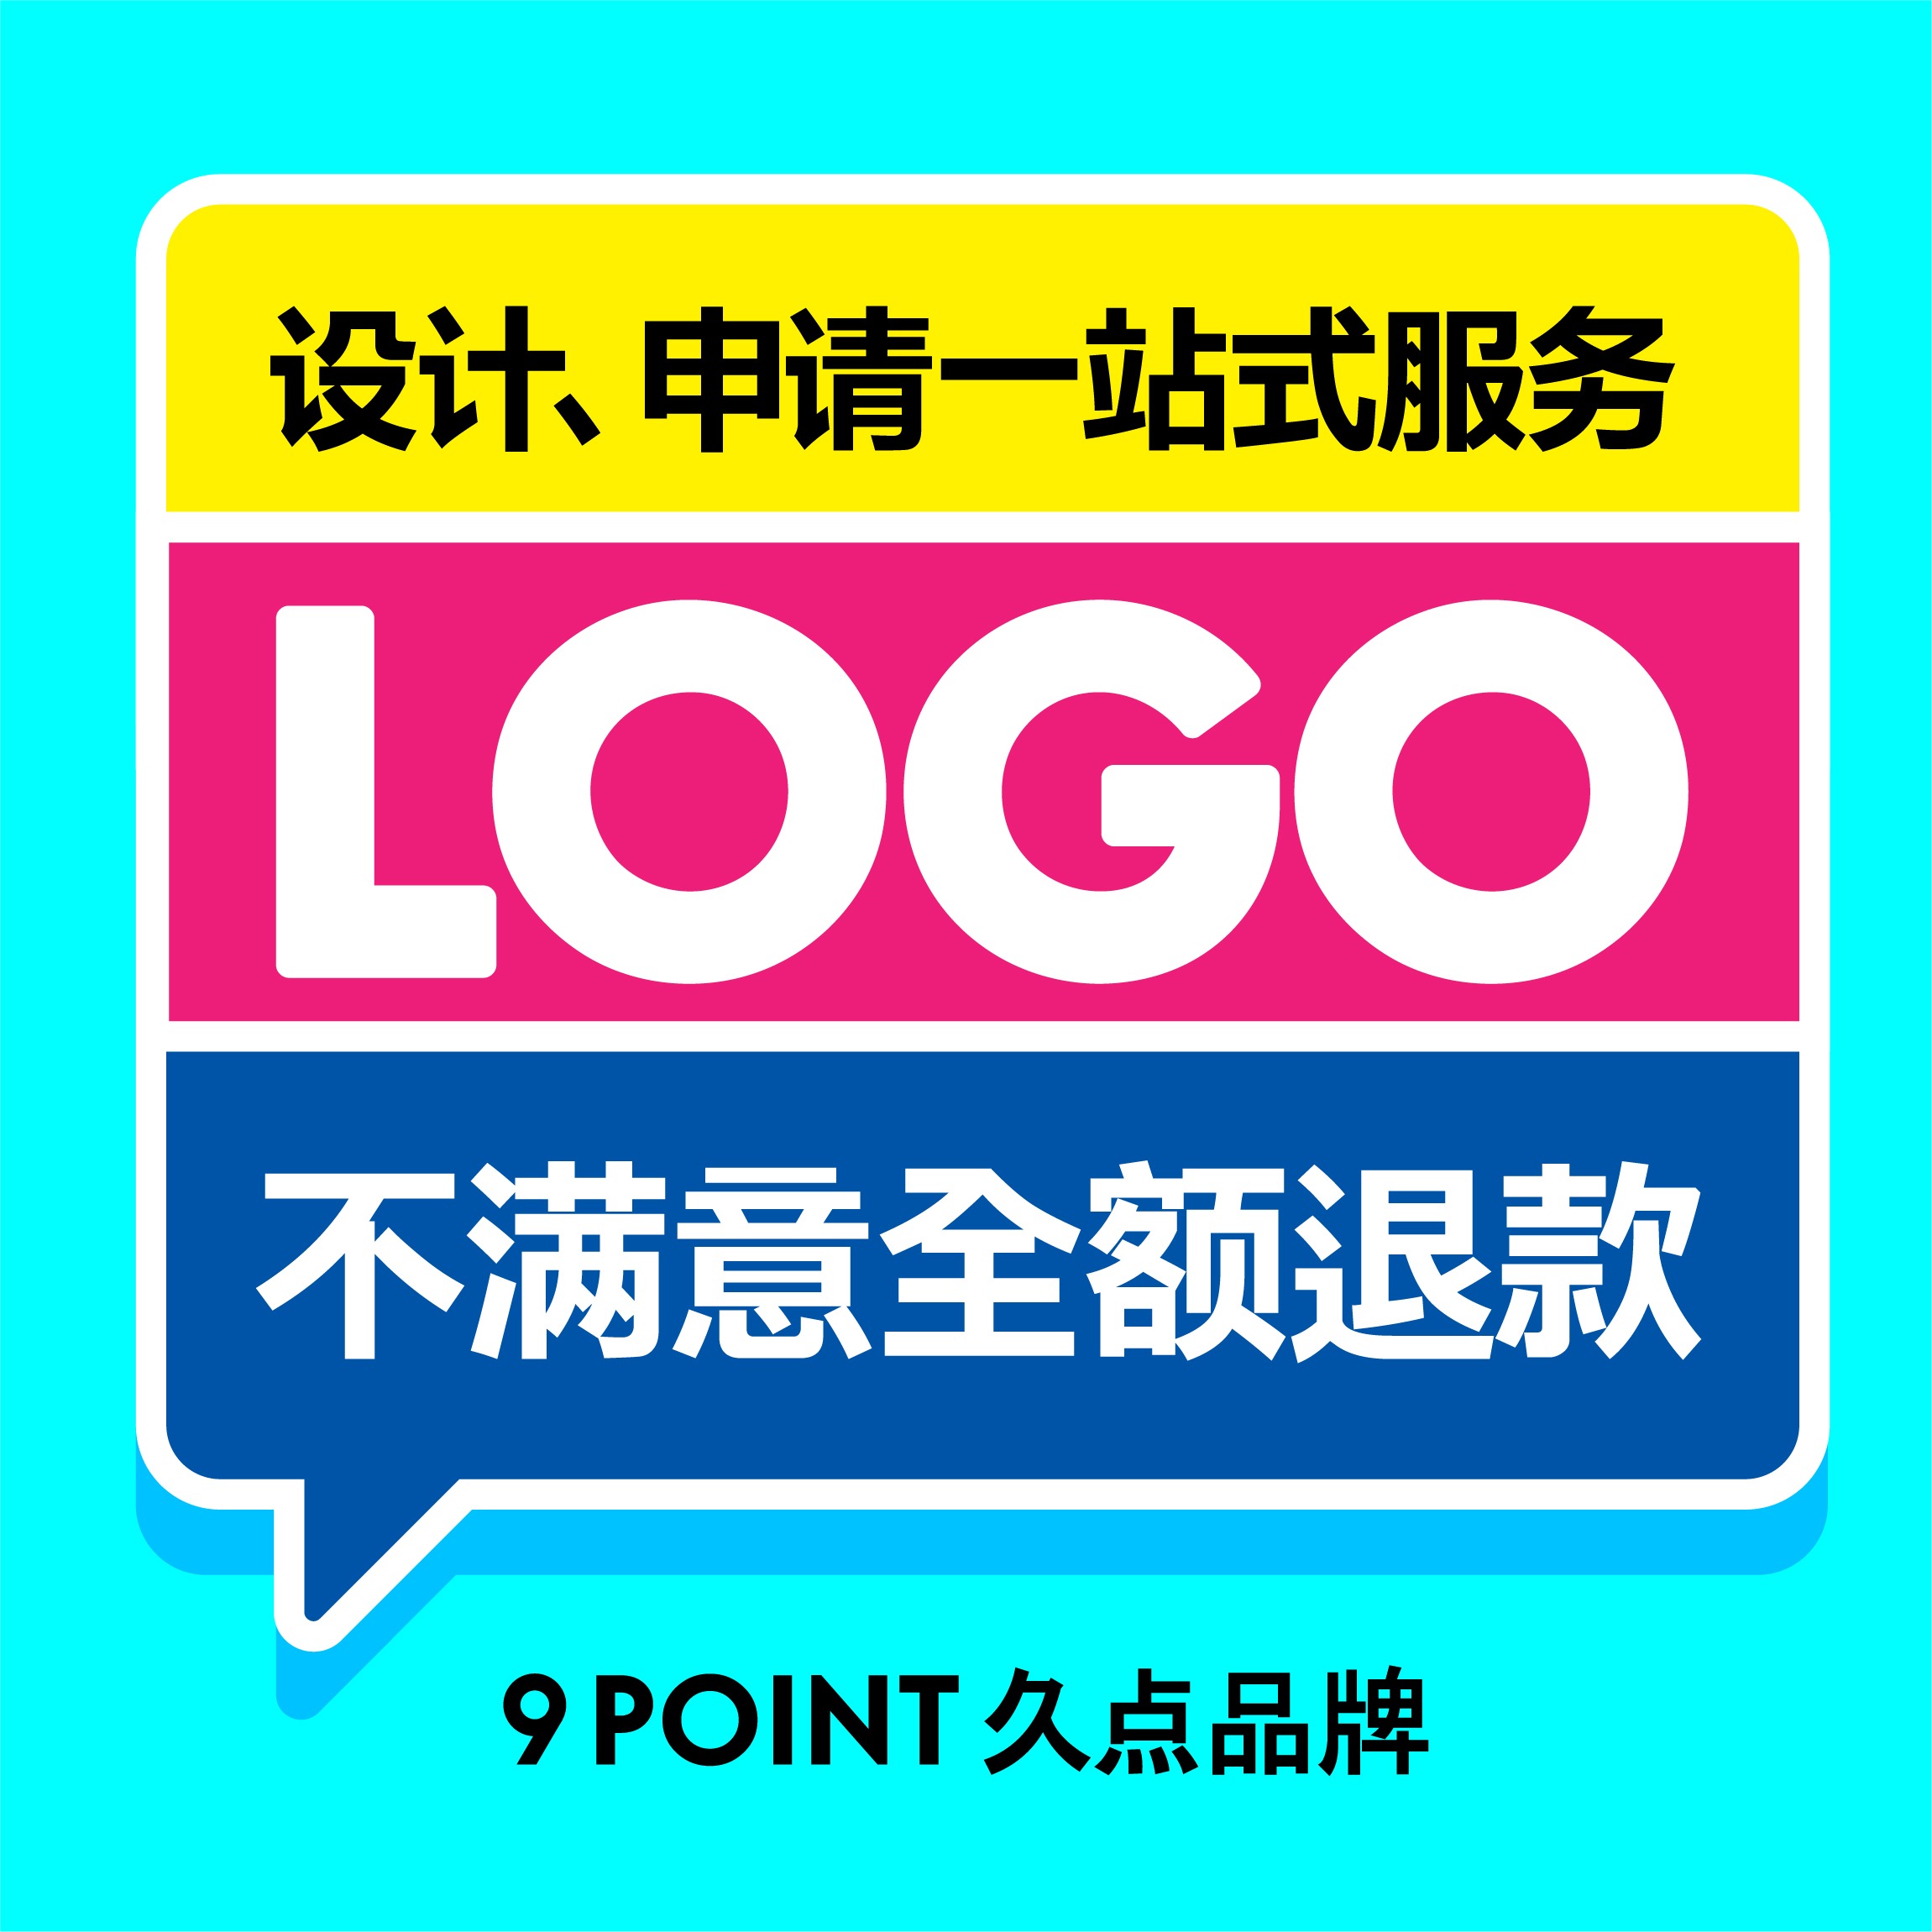 企业公司品牌logo设计图文原创标志商标LOGO图标平面设计